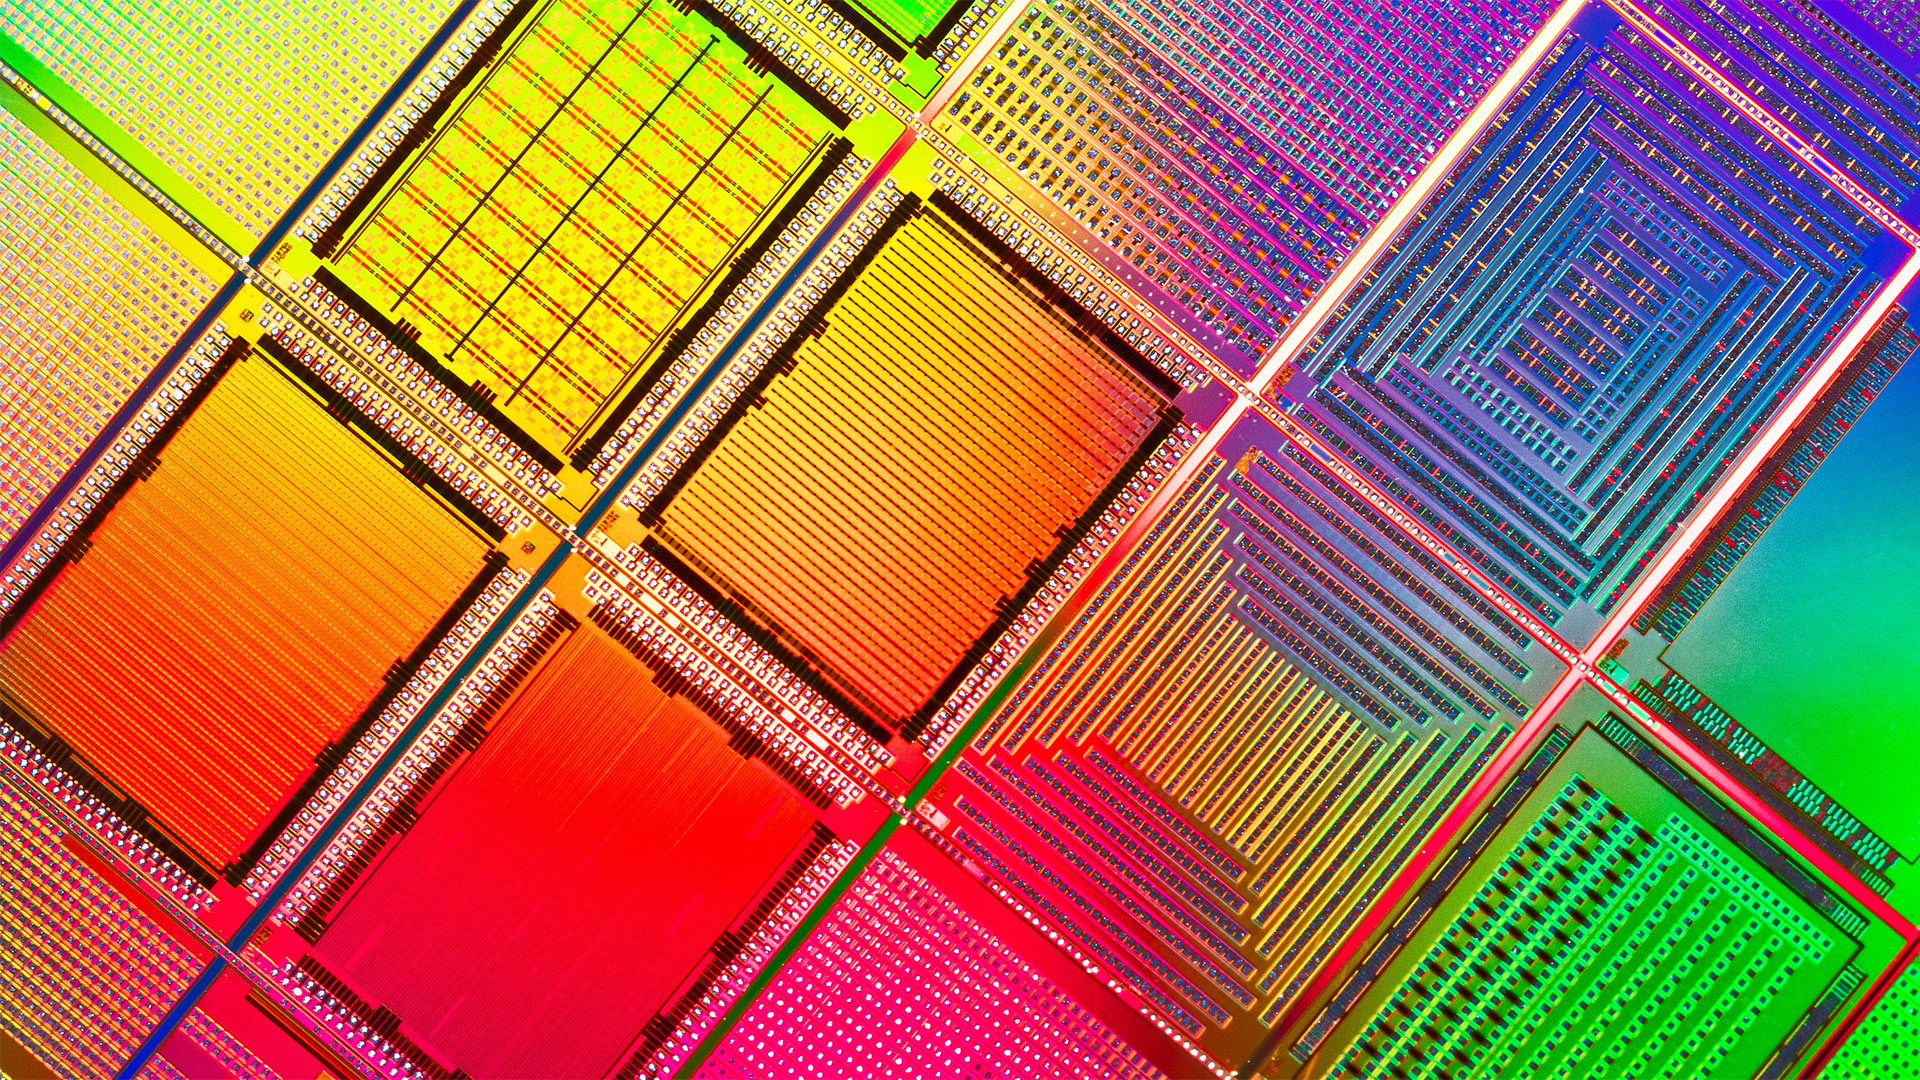 Heftig abgeschmiert: Lohnt sich gerade jetzt ein Einstieg bei Chipaktien wie Infineon und Aixtron? (Foto: Mirage/Getty Images)